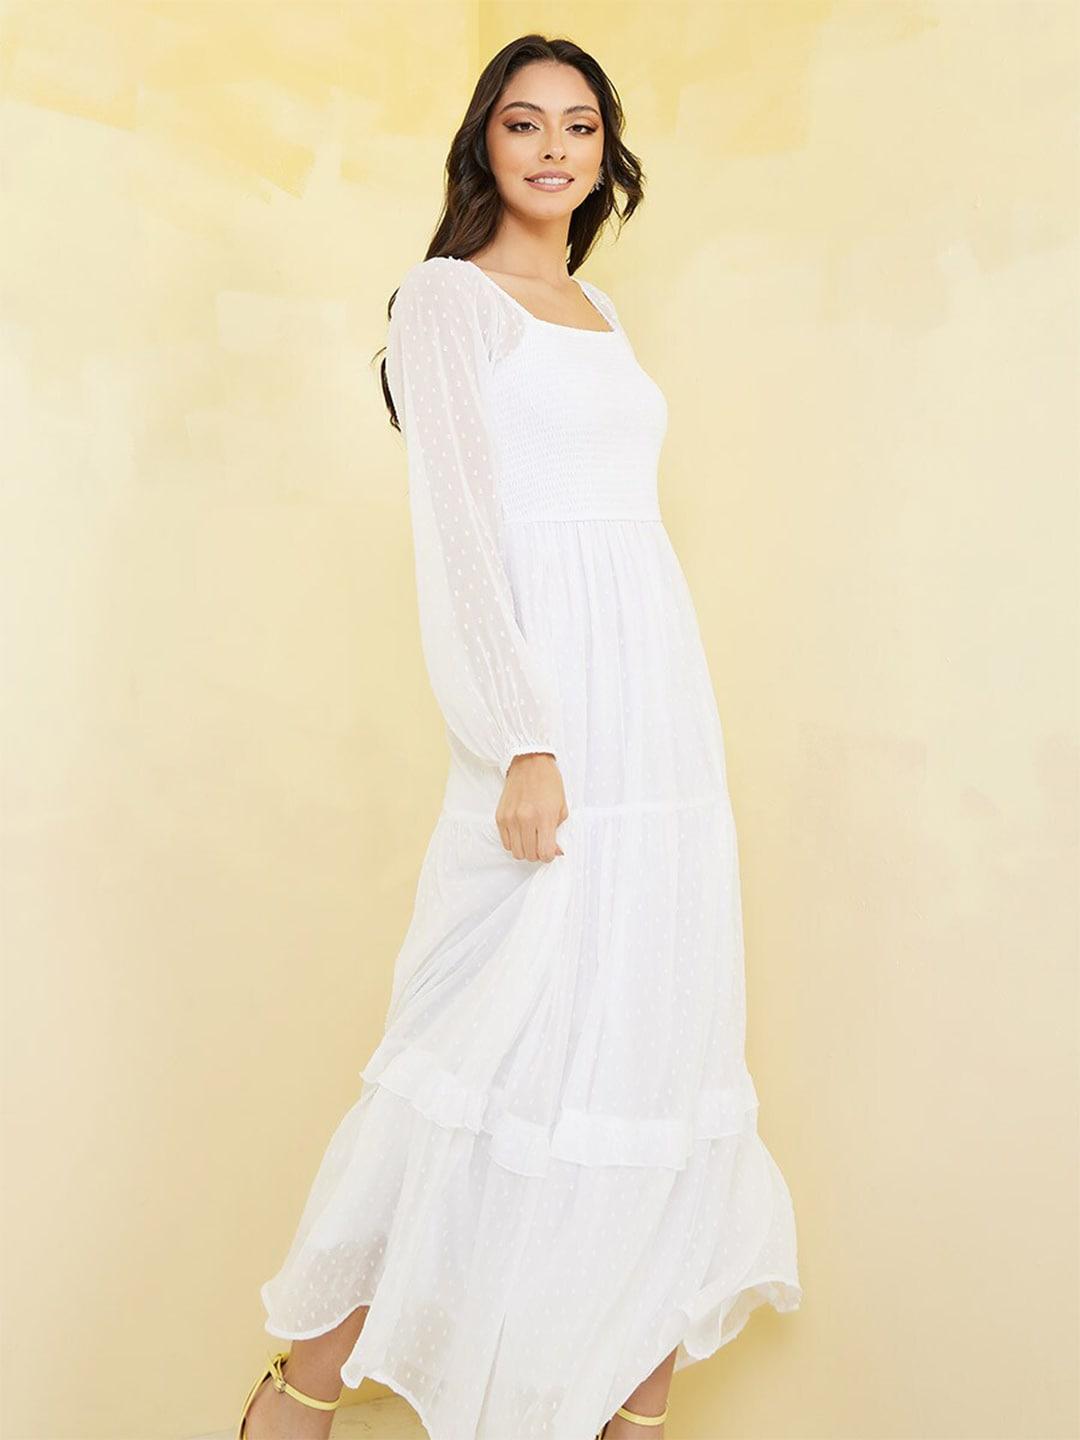 styli-white-maxi-dress